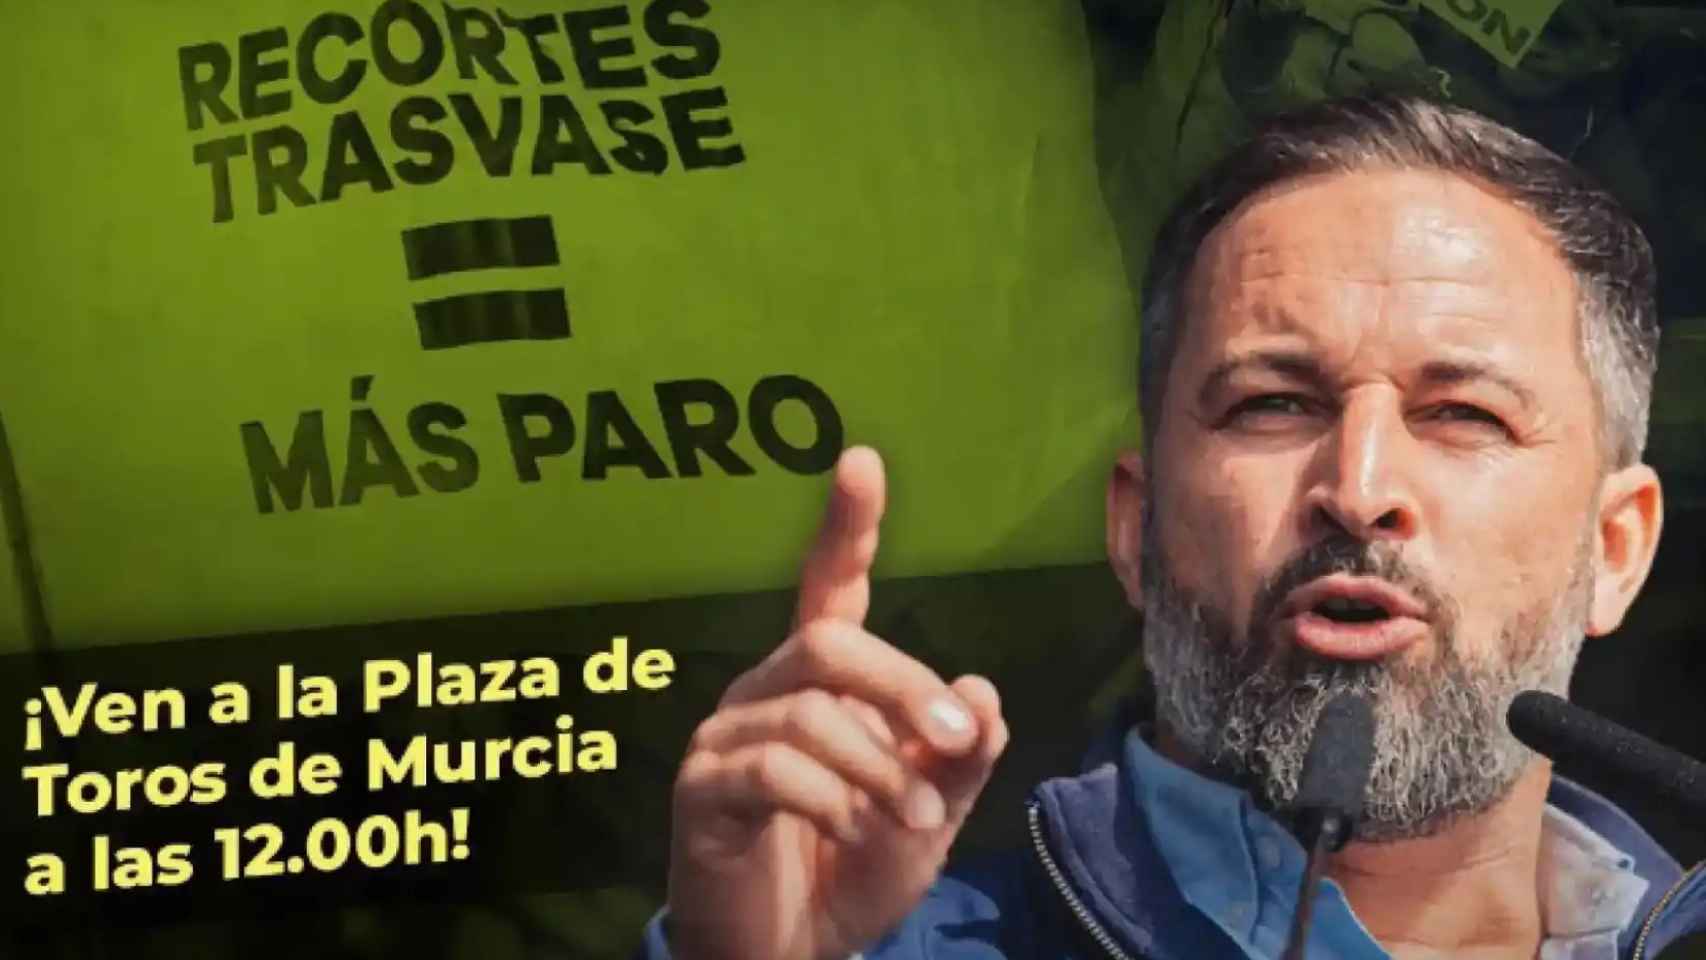 Imagen que Vox está difundiendo para publicitar el mitin que Santiago Abascal ofrecerá este domingo en Murcia.